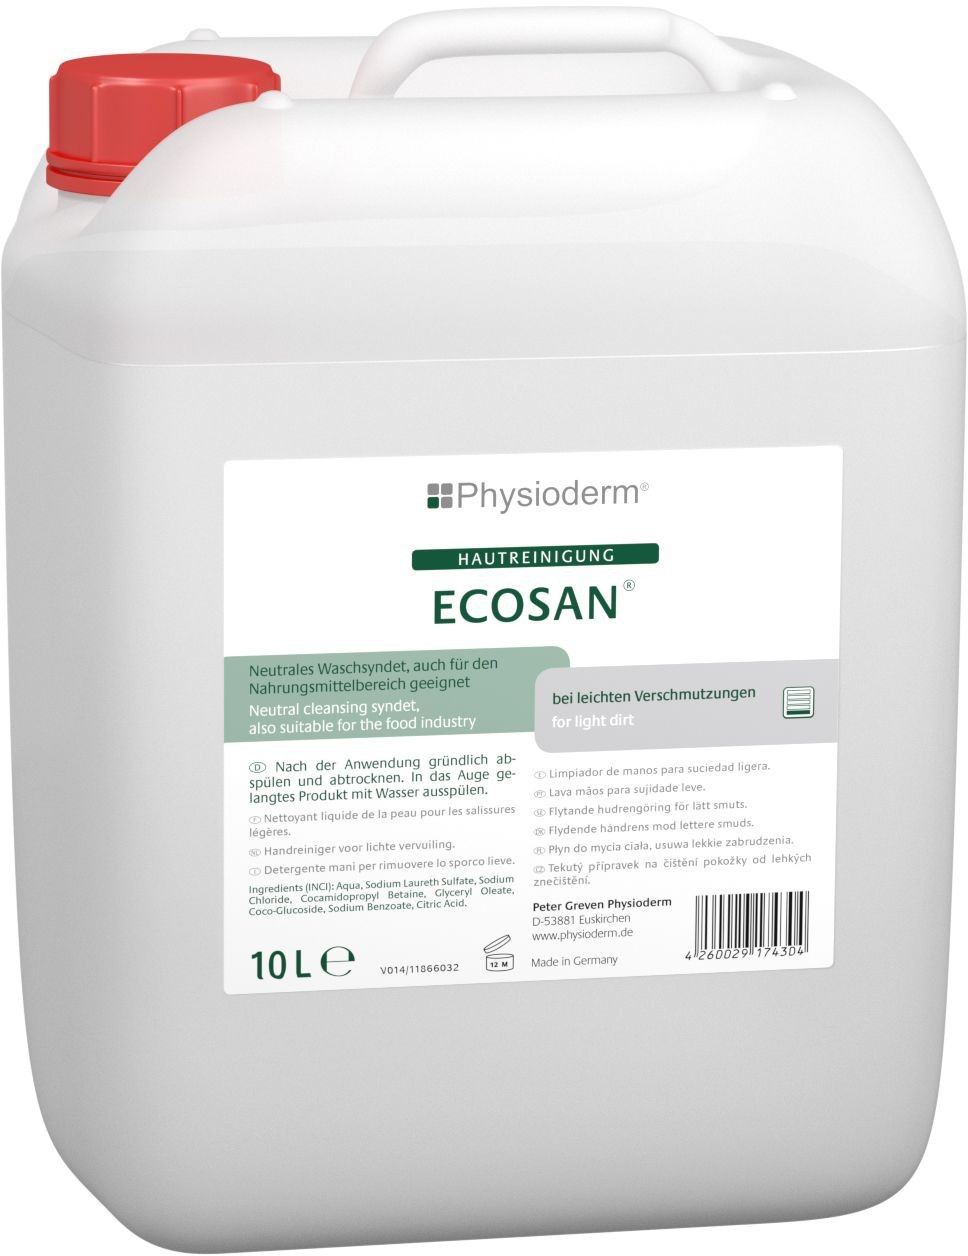 Peter Greven Physioderm® Ecosan Handwaschpaste 10 Liter Kanister